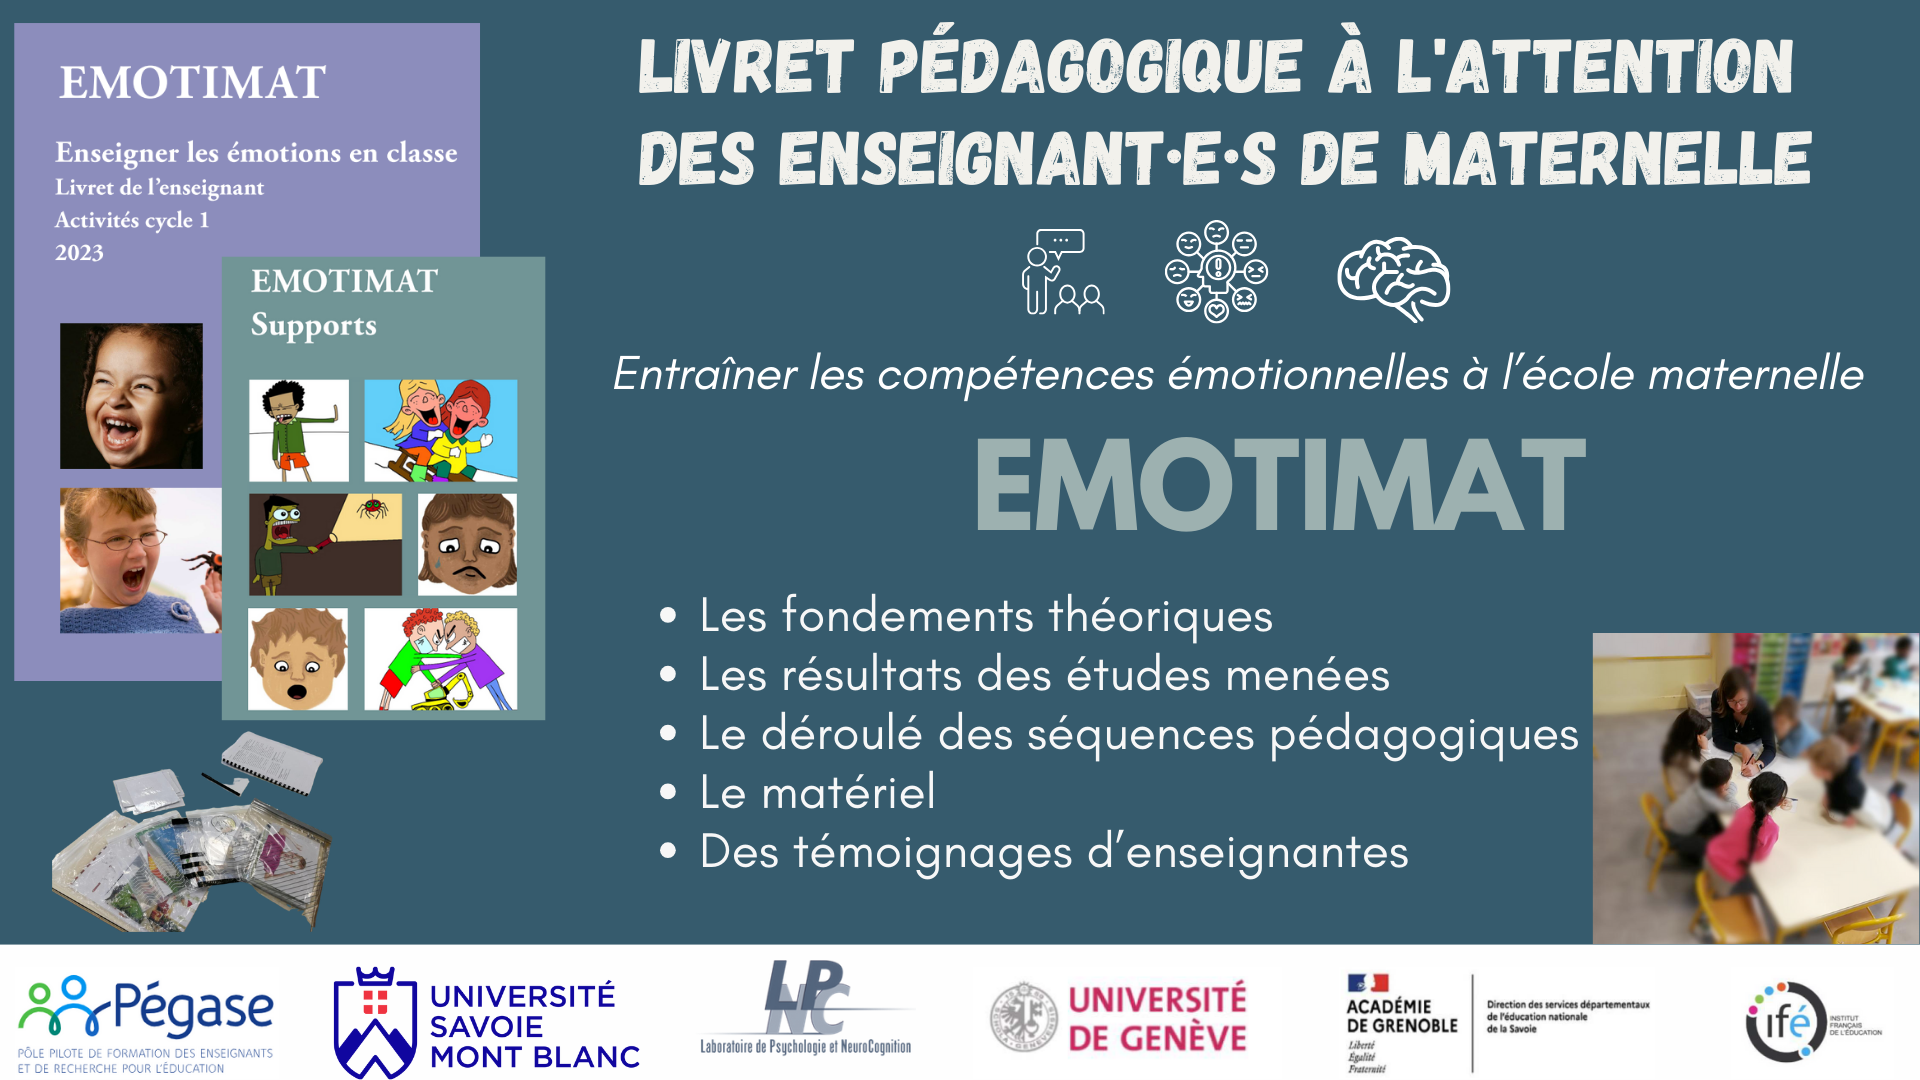 Projet EMOTIMAT : publication d'un livret pédagogique à l'attention des enseignant·e·s de maternelle